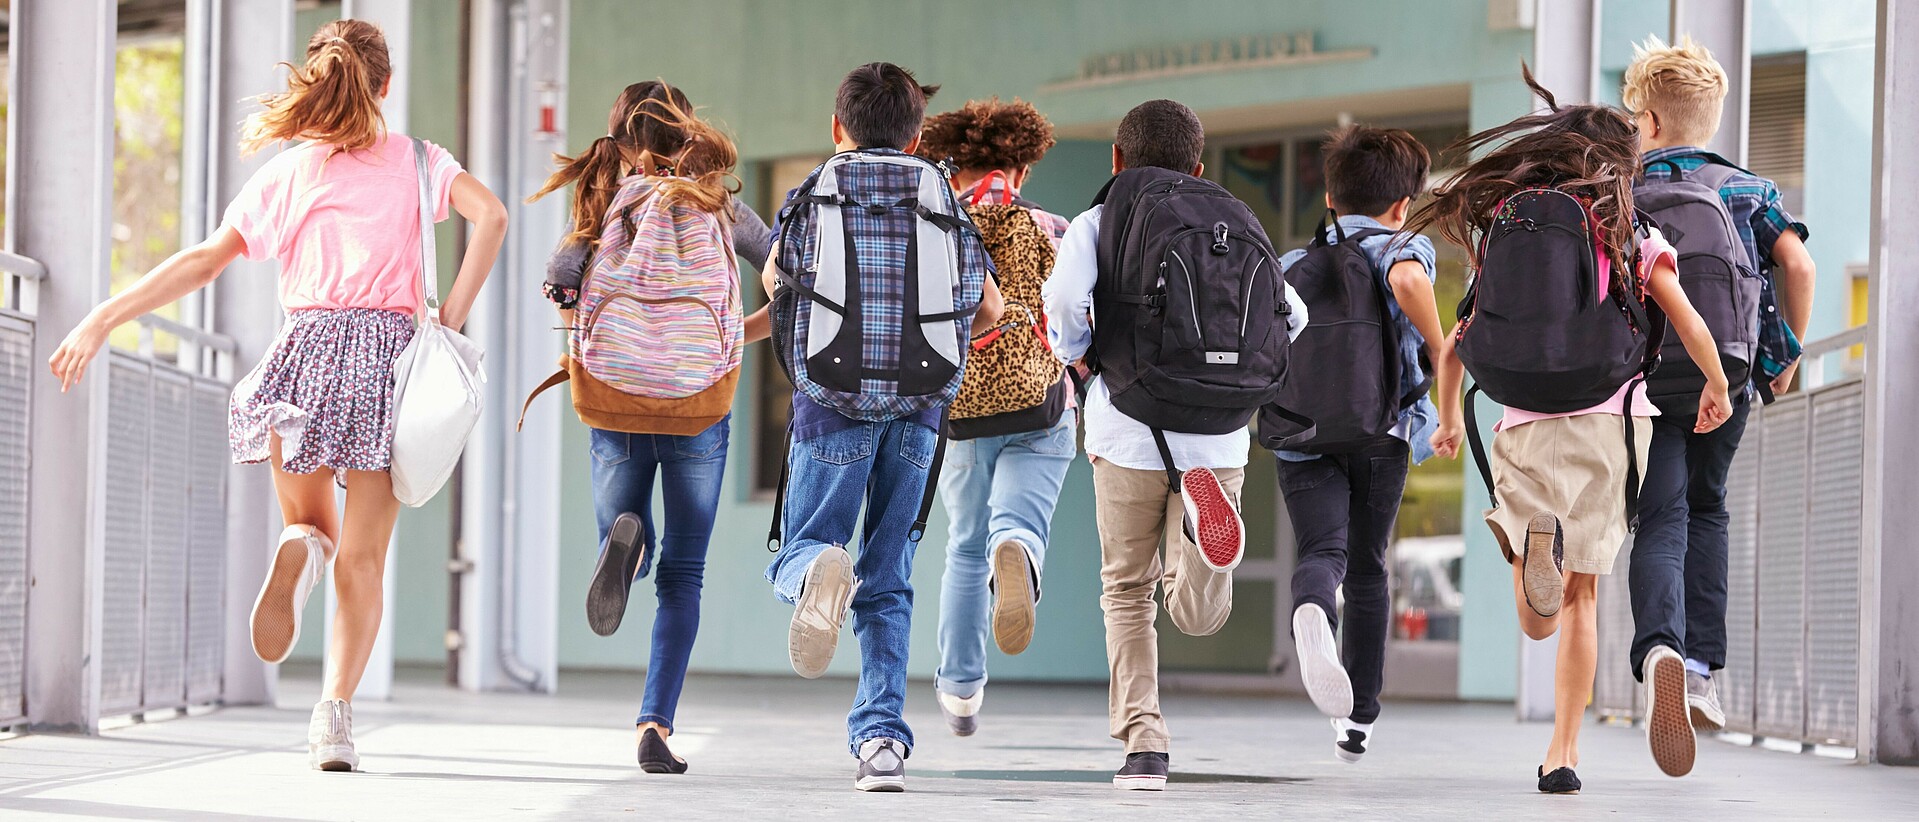 Schulkinder mit Rucksäcken laufen am Gang entlang